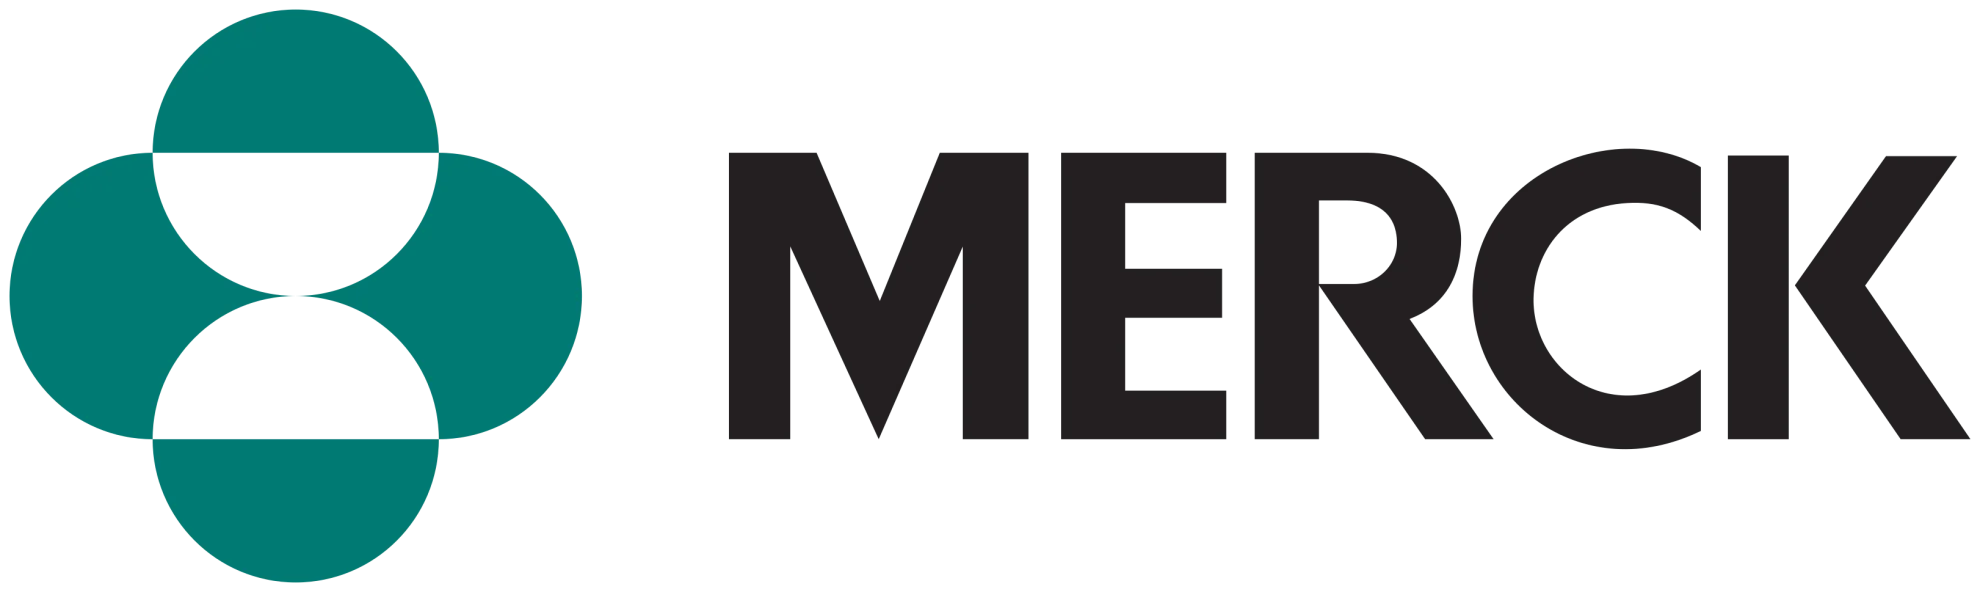 rome business school partner merck logo